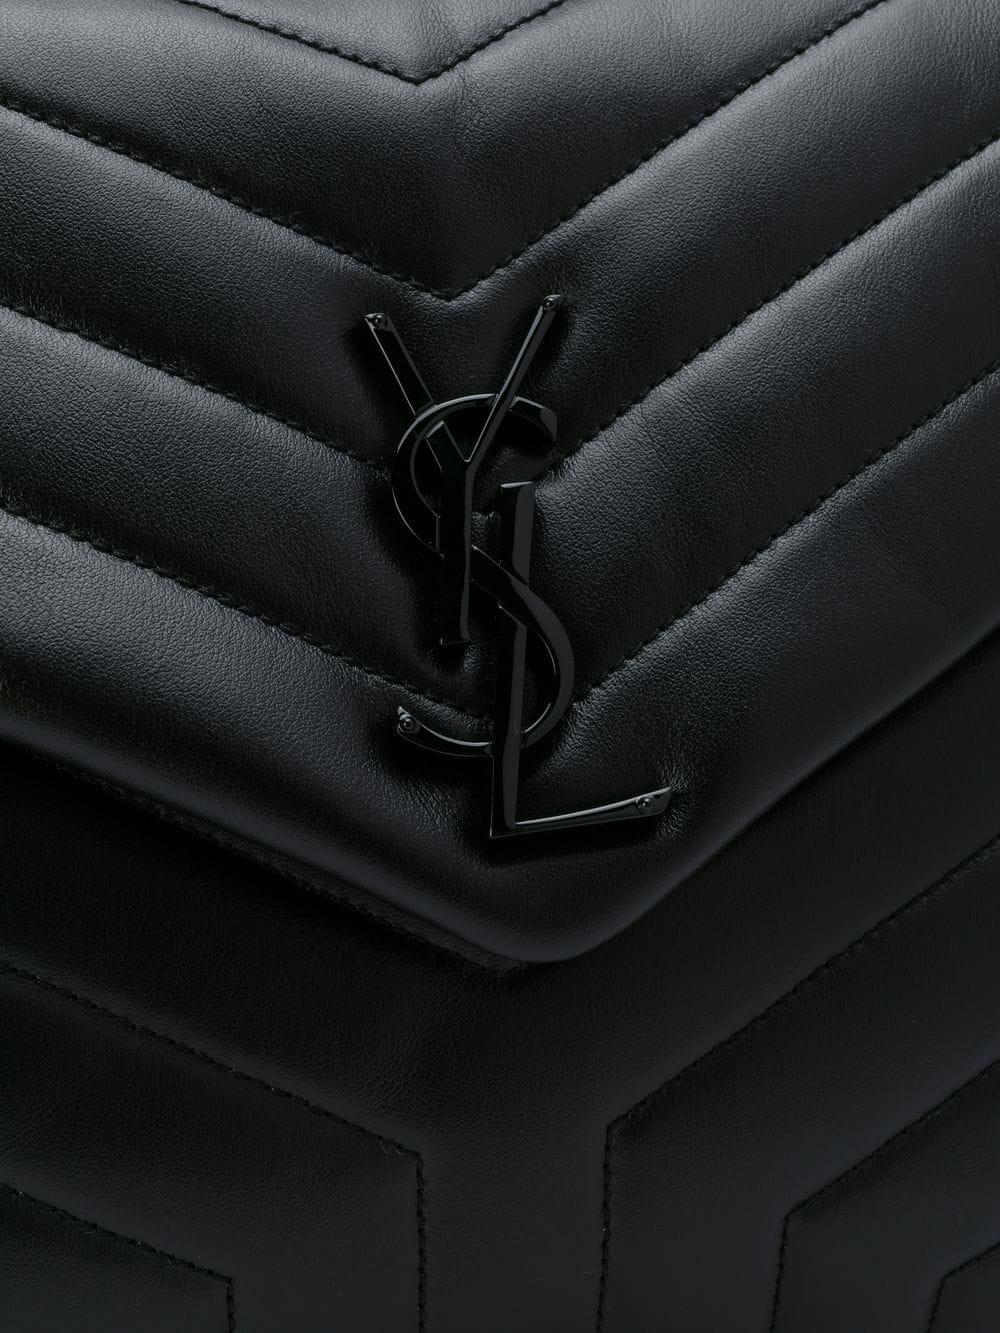 YSL Yves Saint Laurent Loulou Black Hardware Medium Quilted Leather  Shoulder Bag